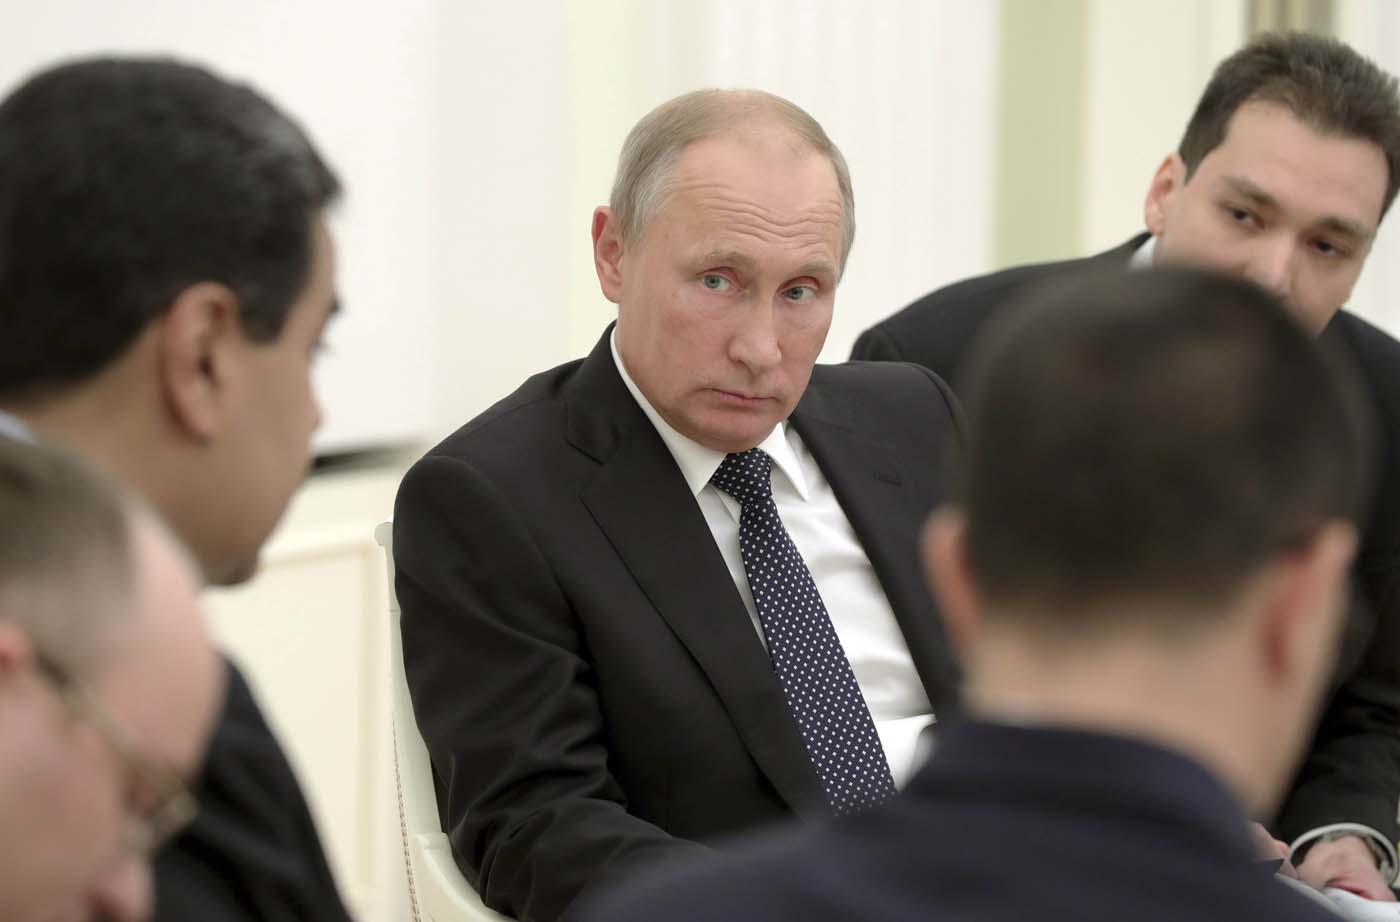 BBC: Putin en América Latina, cuáles son los objetivos estratégicos de Rusia en la región